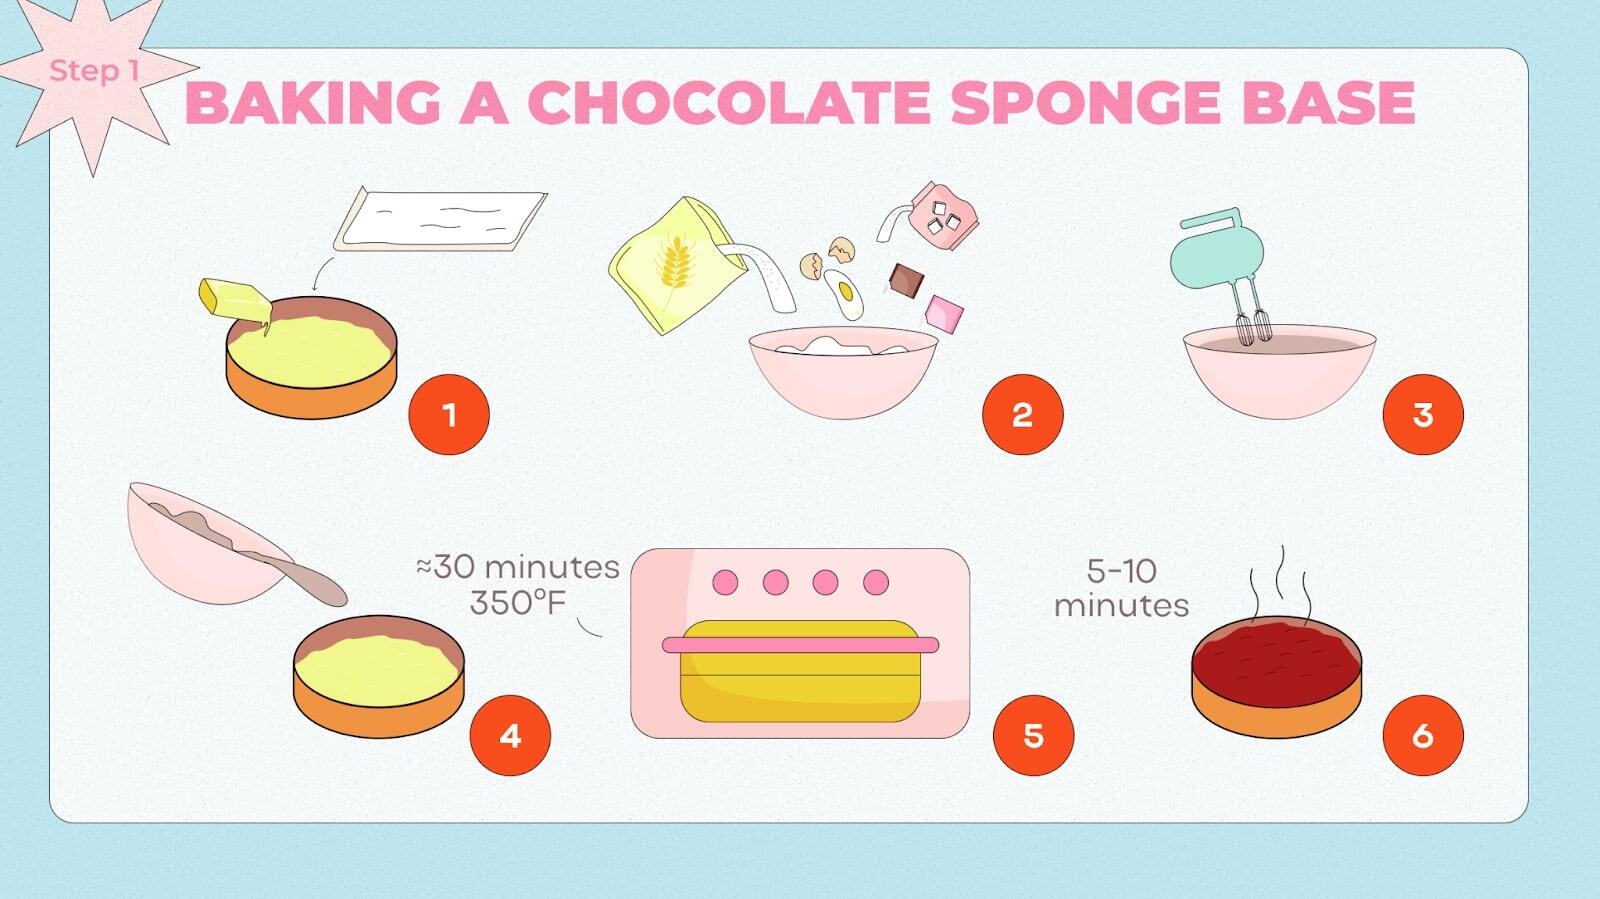 Instruction for baking Chocolate Sponge Base